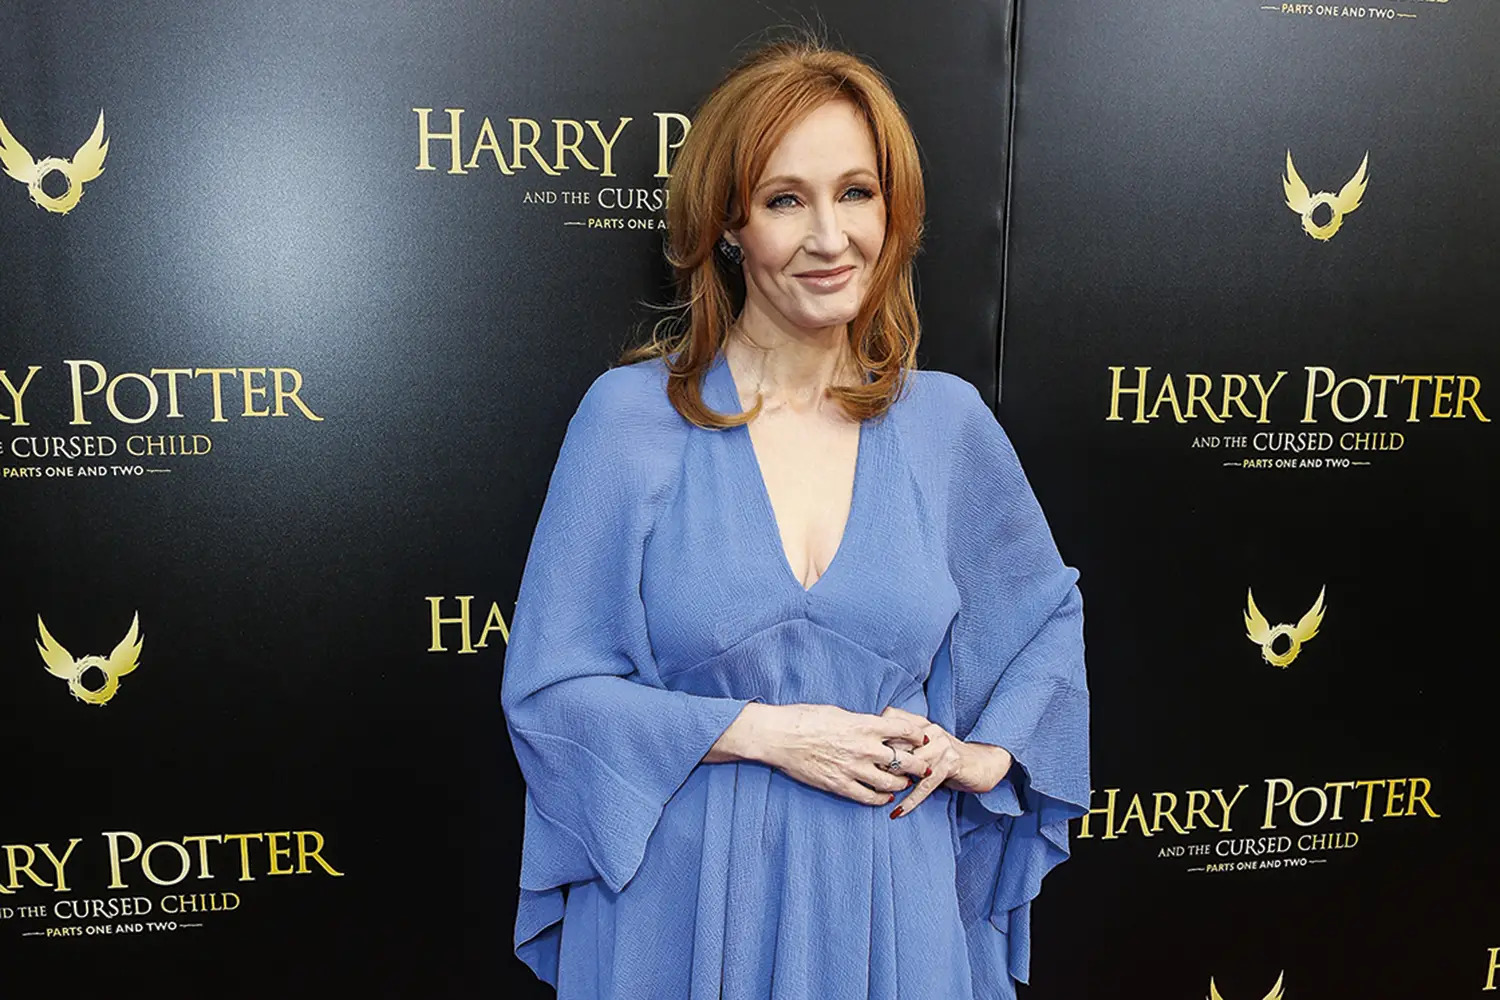  A nova polêmica de J.K. Rowling envolvendo pessoas trans